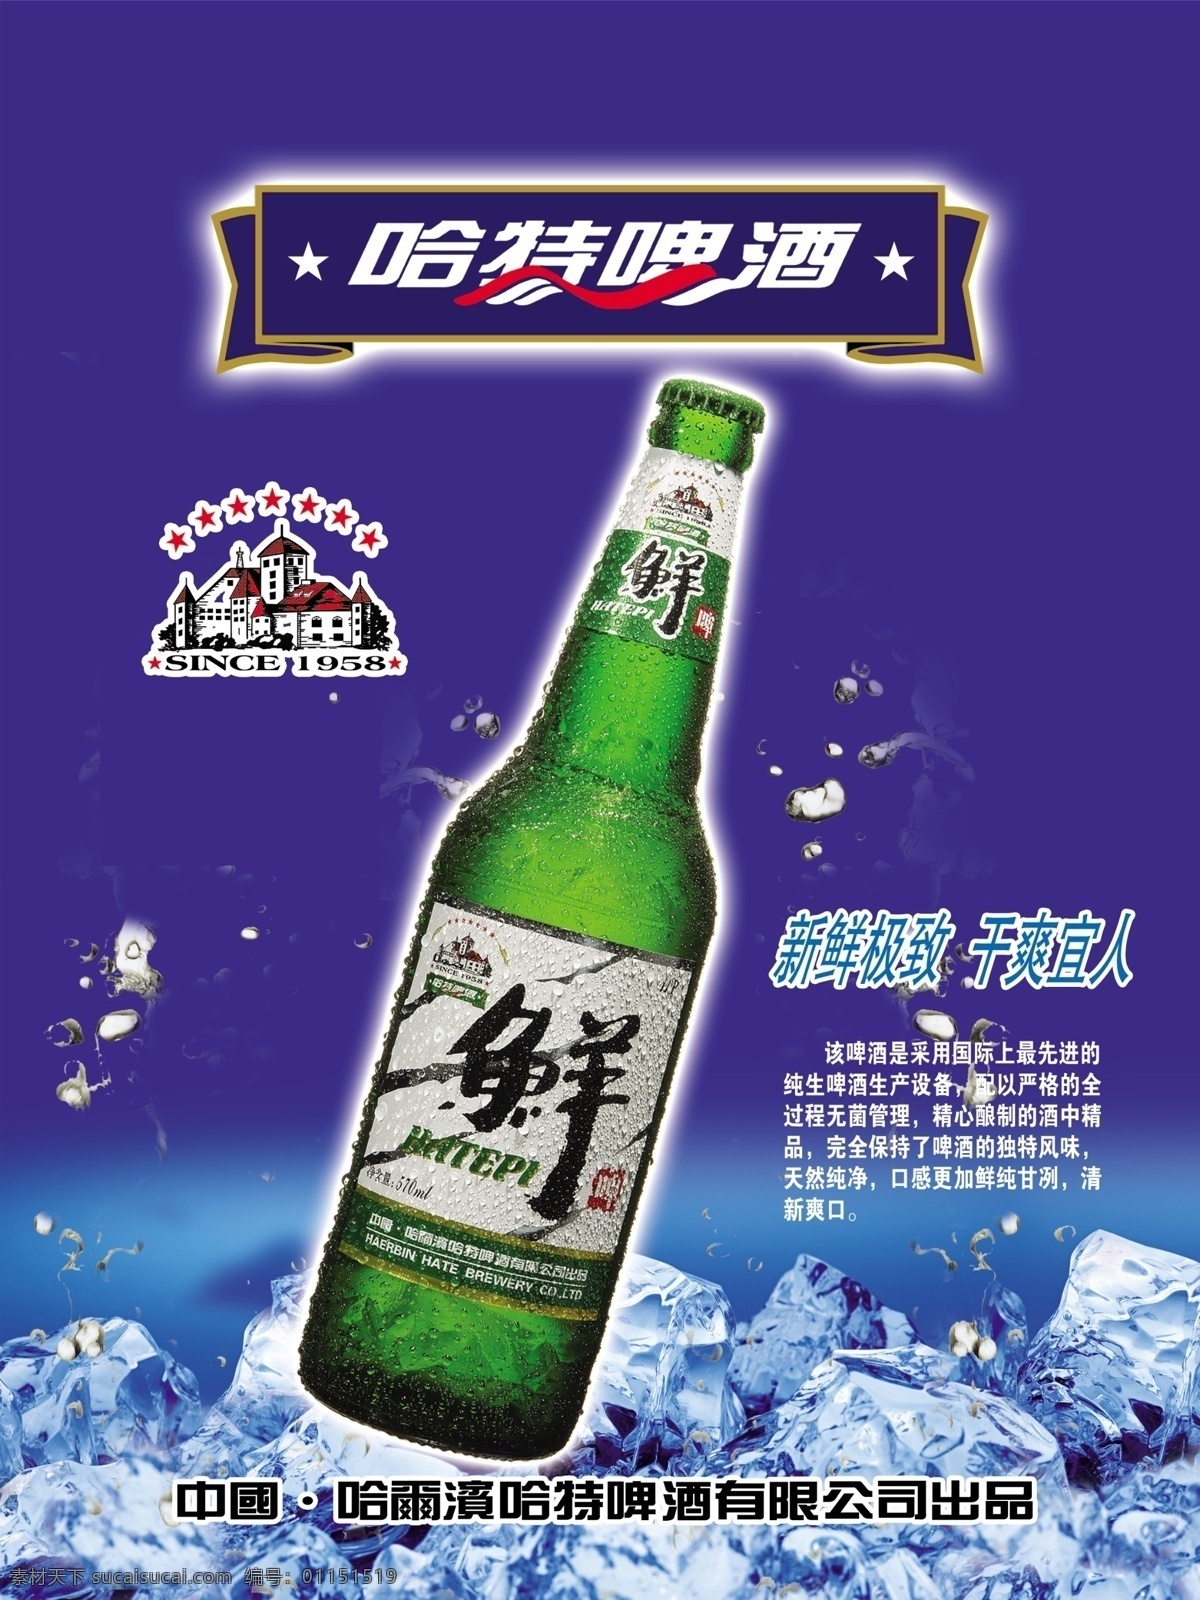 啤酒 模版下载 啤酒素材下载 啤酒模板下载 鲜 哈特 酒 蓝色 冰块 海报 广告设计模板 源文件